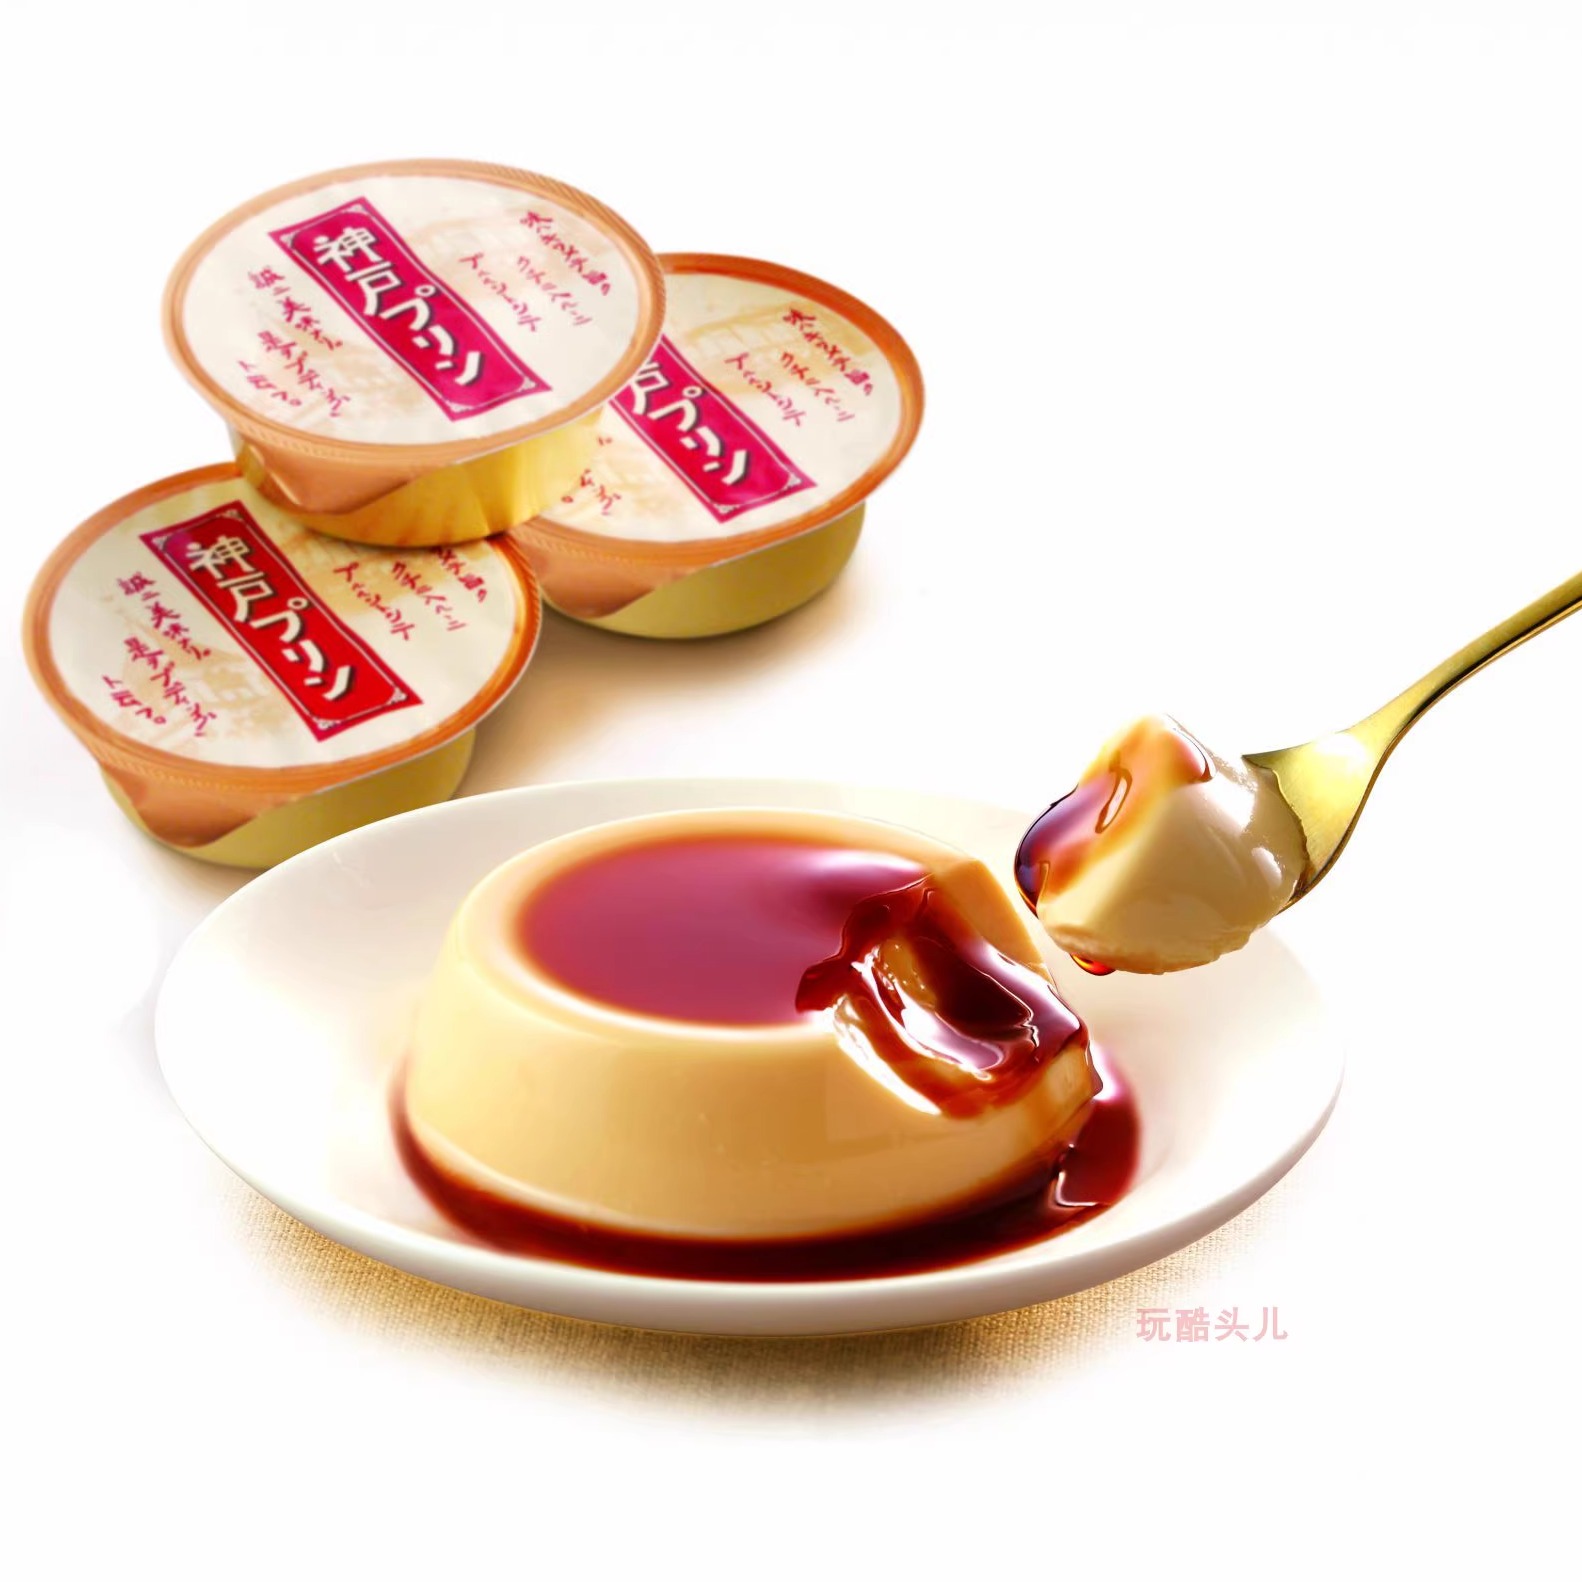 日本9年金奖 神户布丁Kobe pudding浓厚牛乳焦糖香草草莓果冻